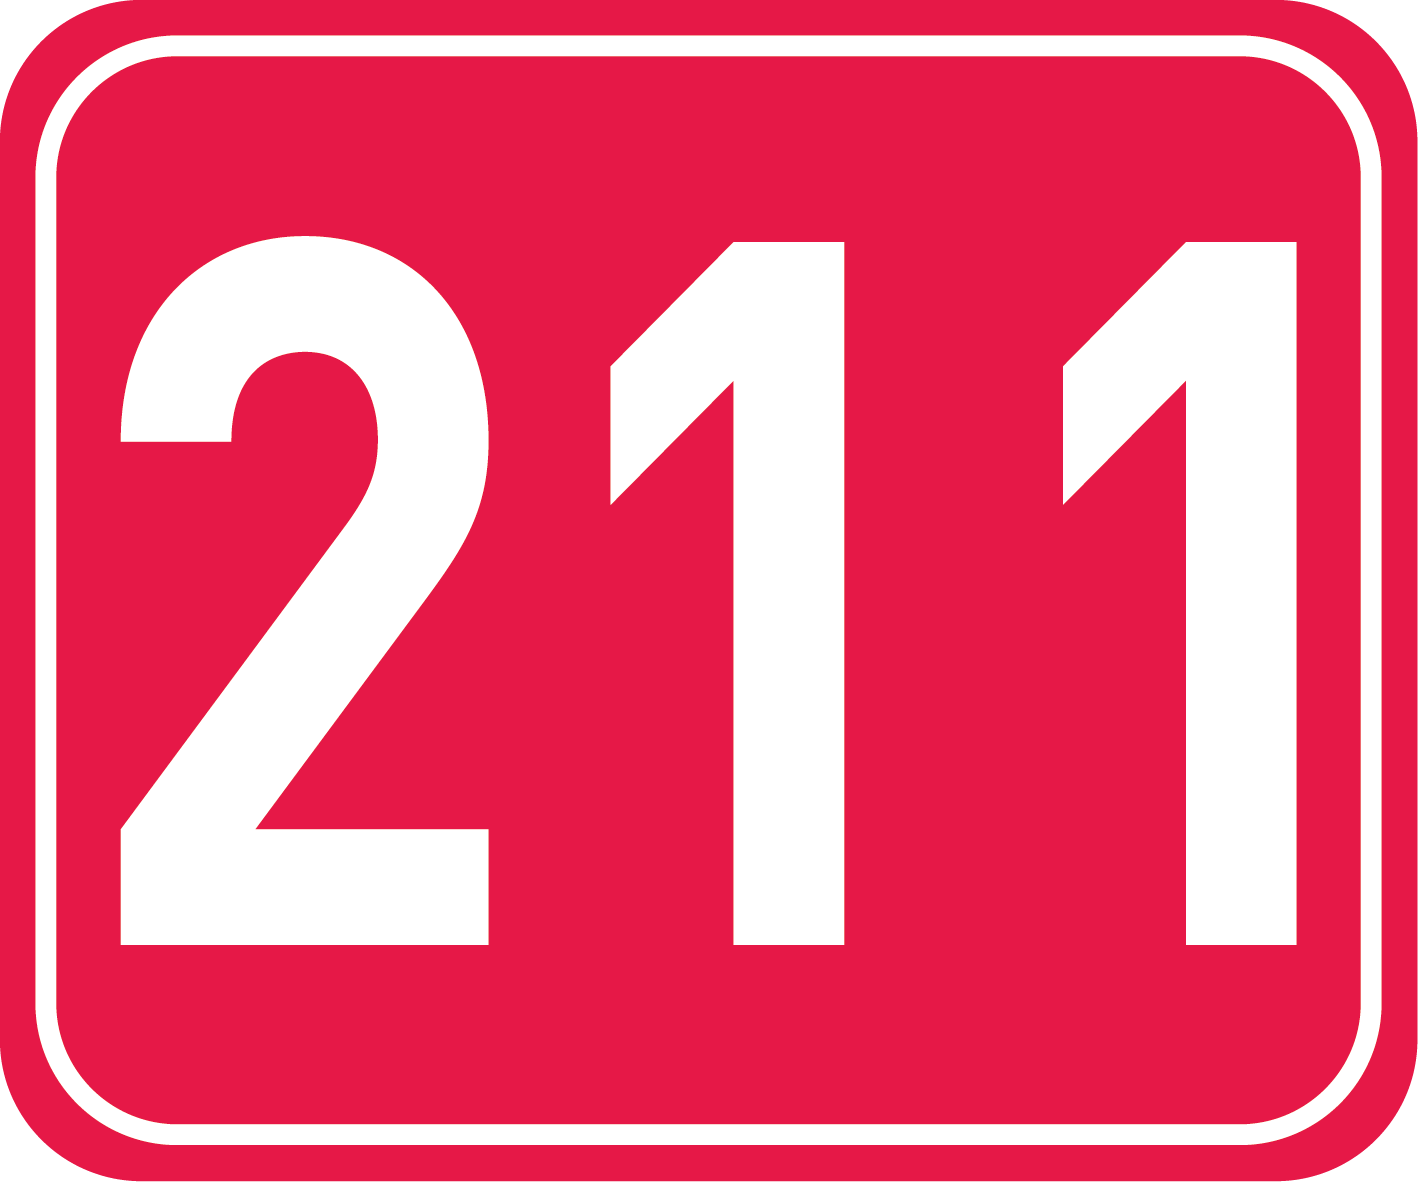 211